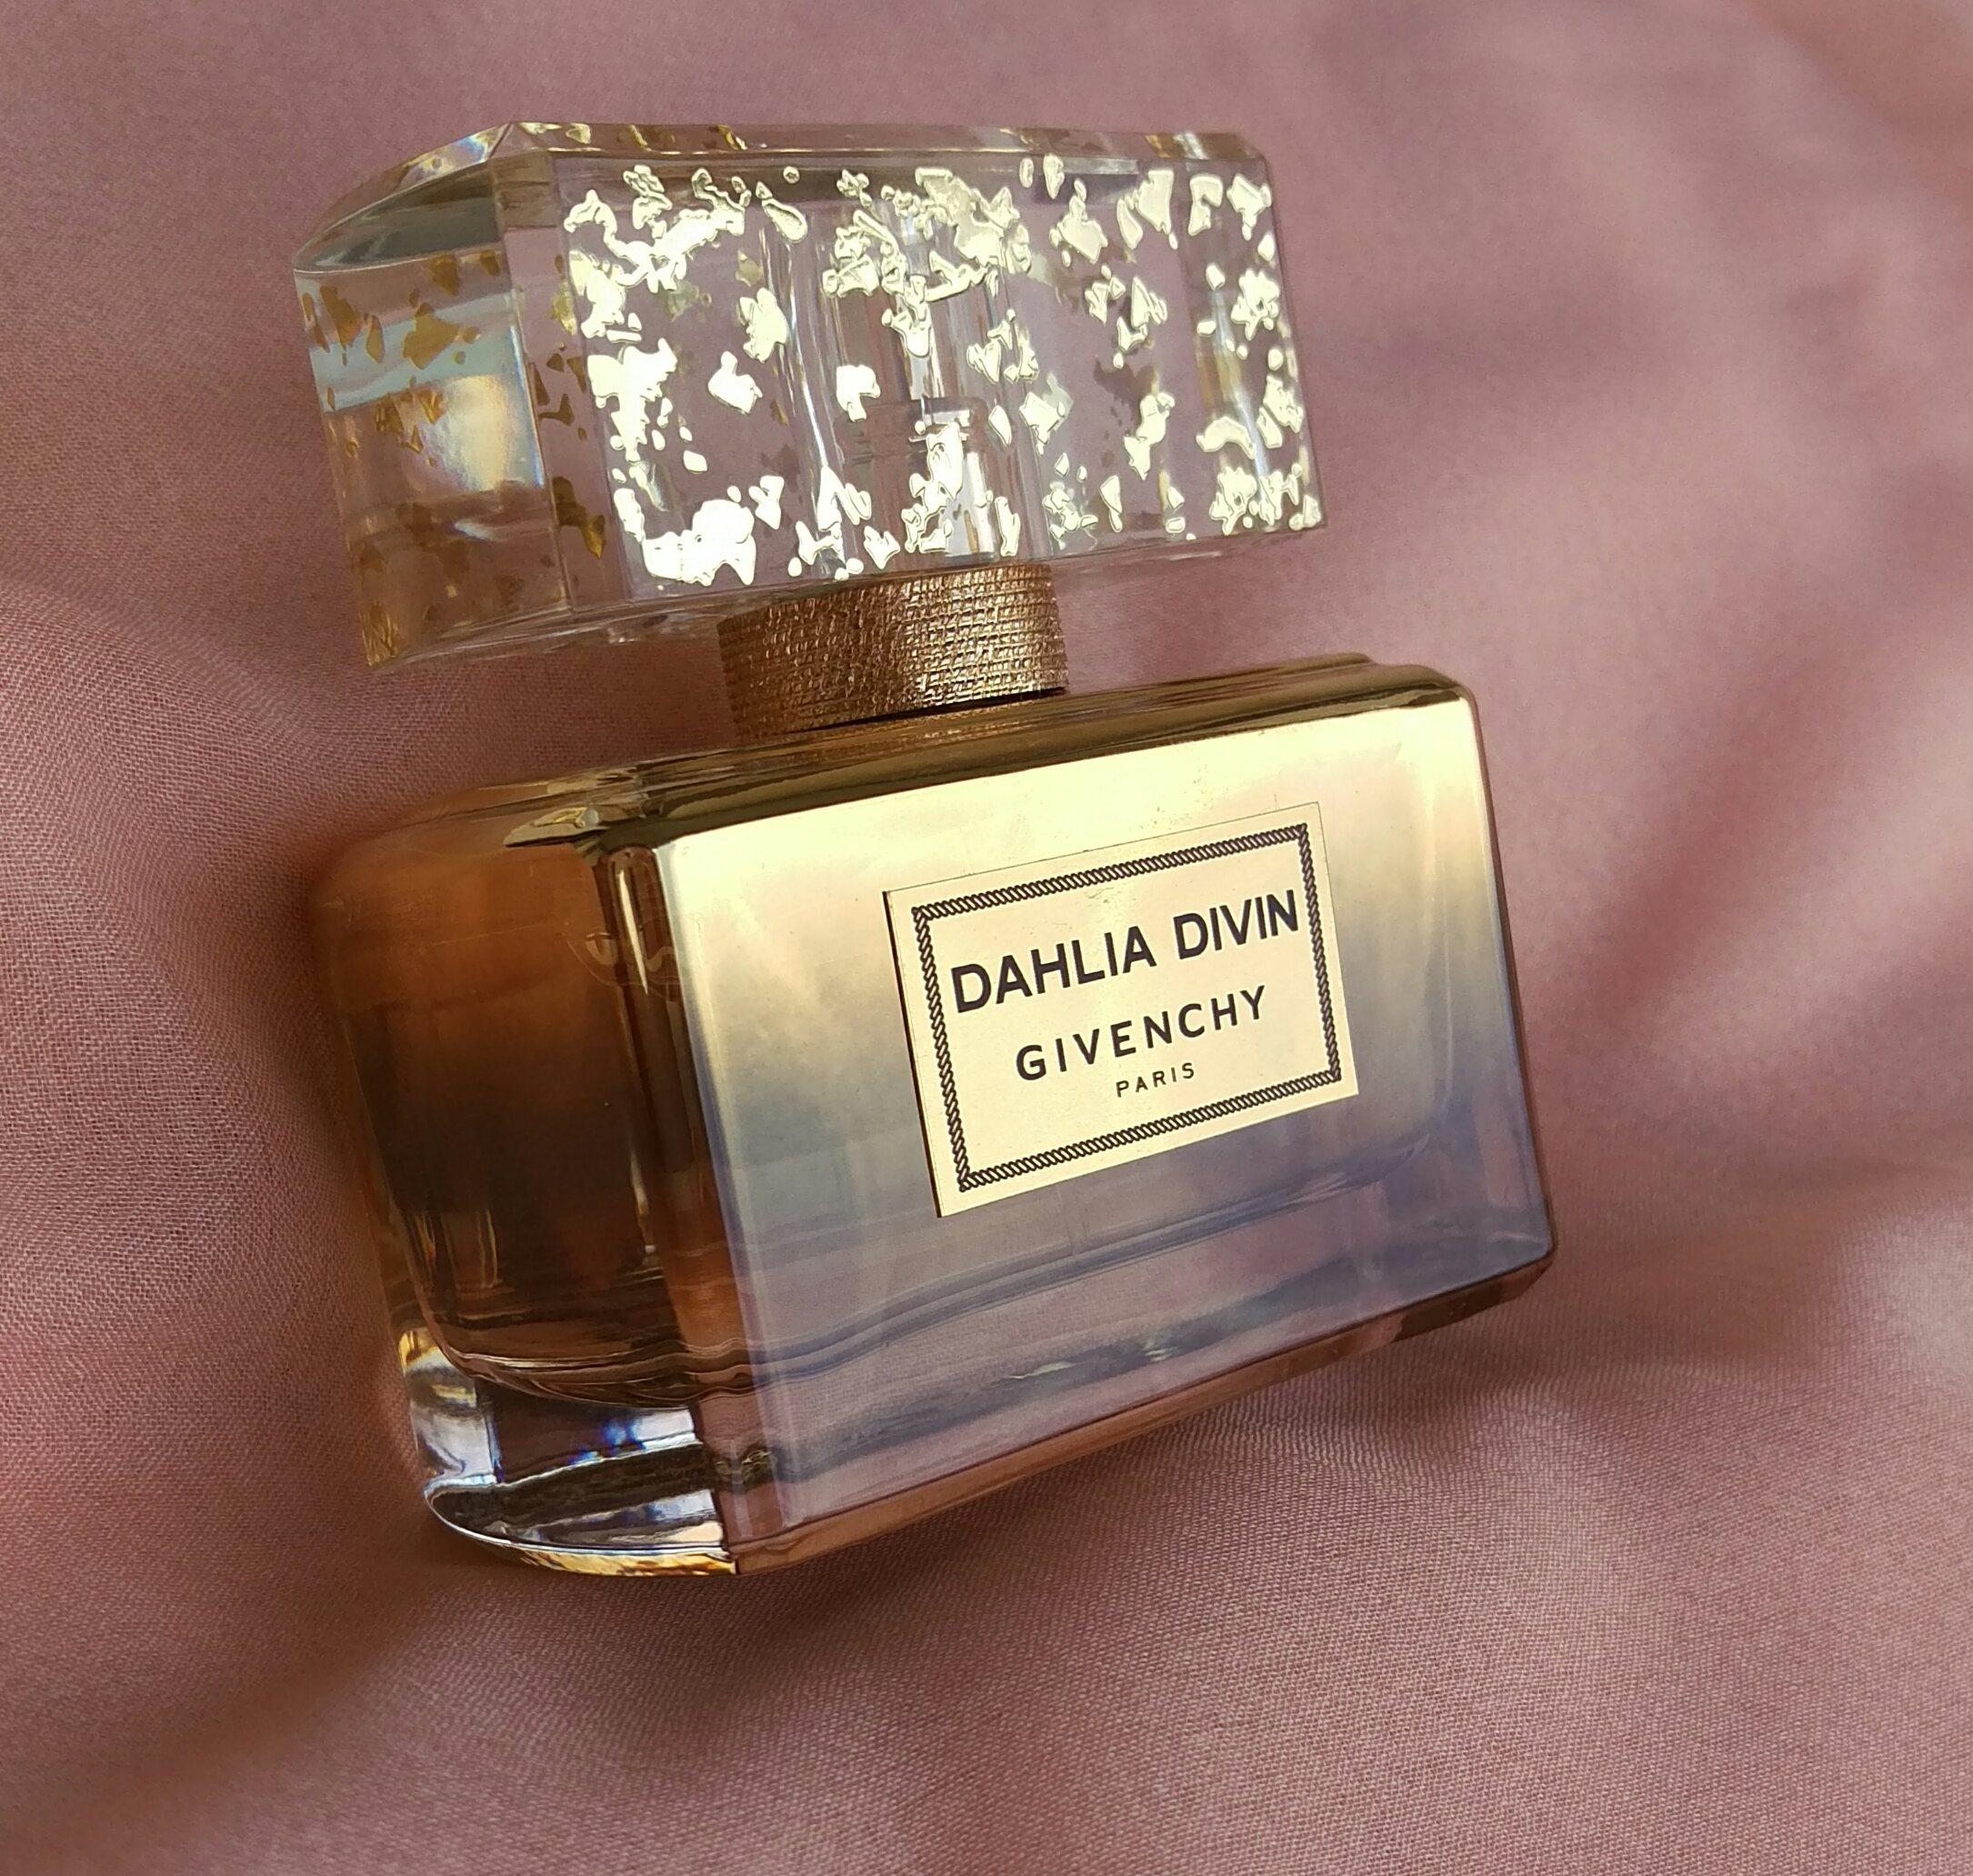 #beautychallenge #parfum Mein Lieblingsparfum ist "Dahlia Divin" von Givenchy. Ein süßlicher und edler Duft!